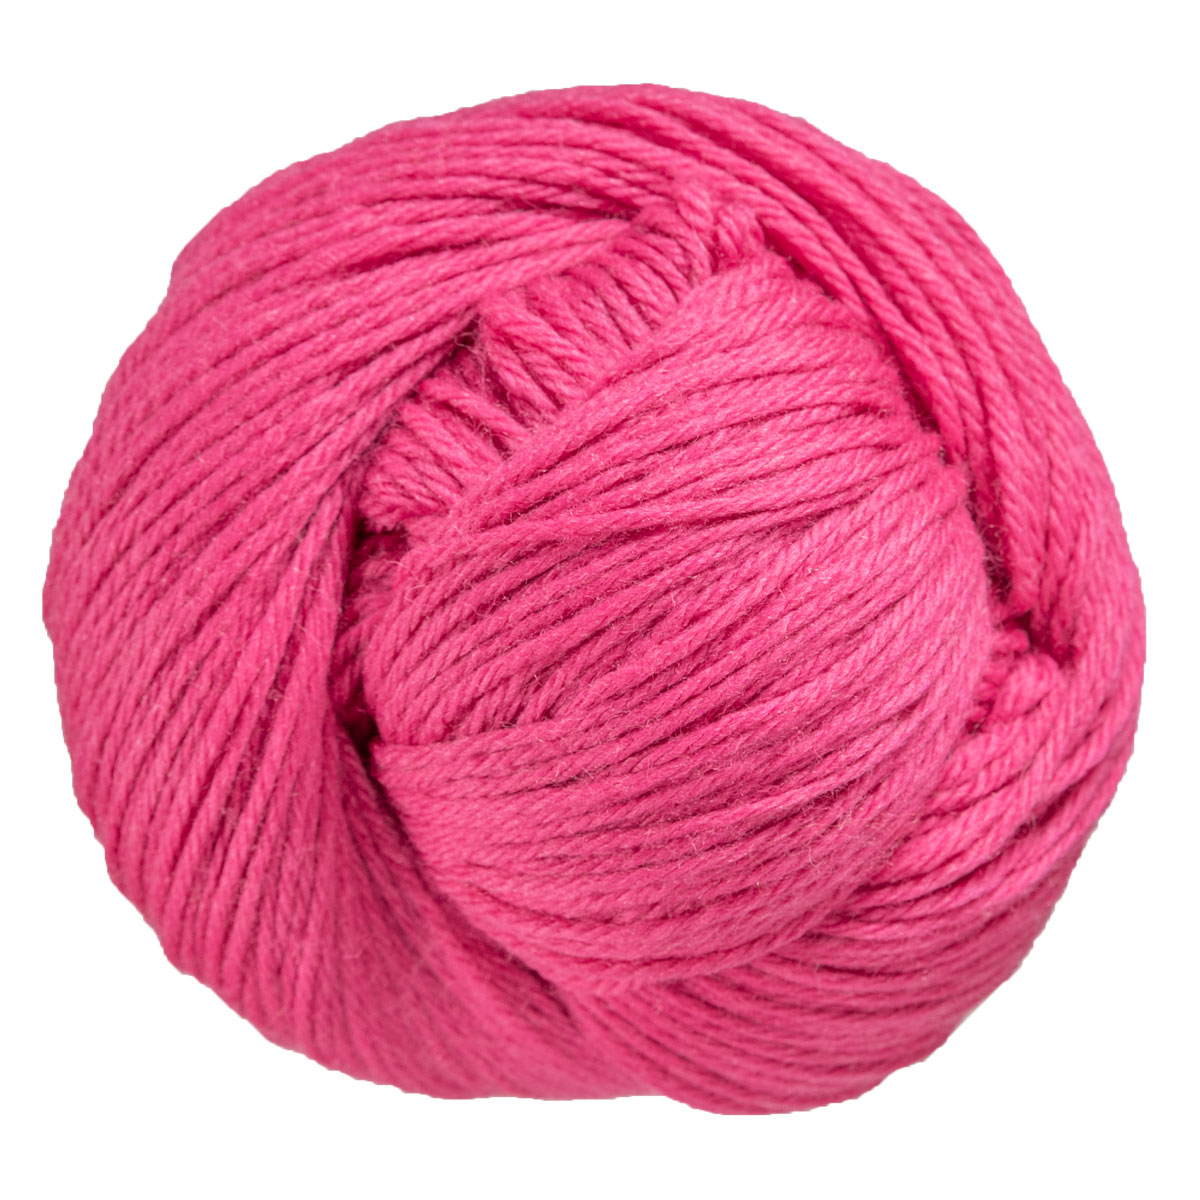 Cascade 220 Peruvian Wool - Hot Pink 9469